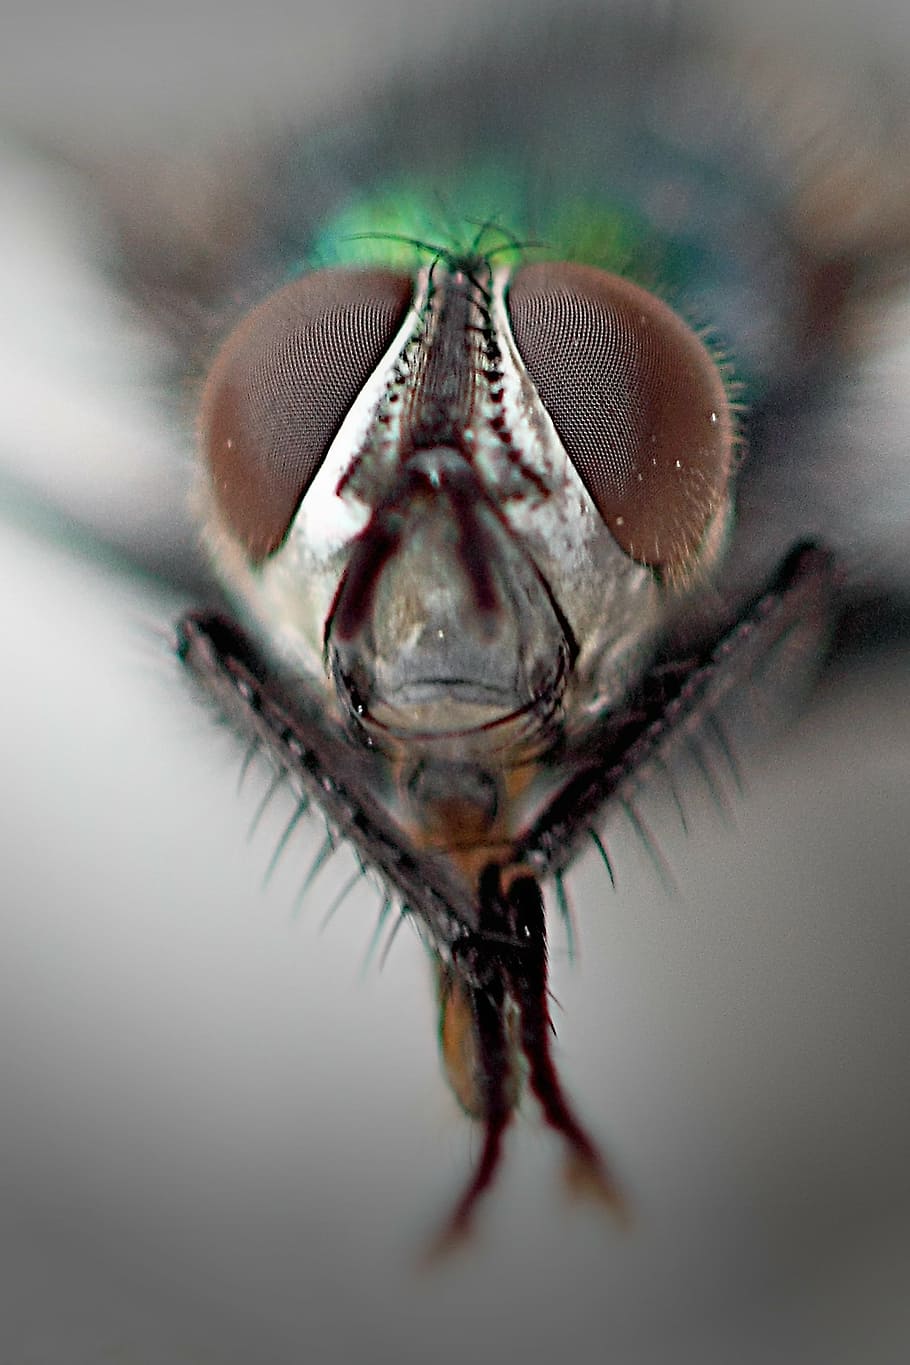 mosca doméstica común, ojos compuestos, macro, cierre, mosca, naturaleza, insecto, mosca doméstica, macro insecto, invertebrados